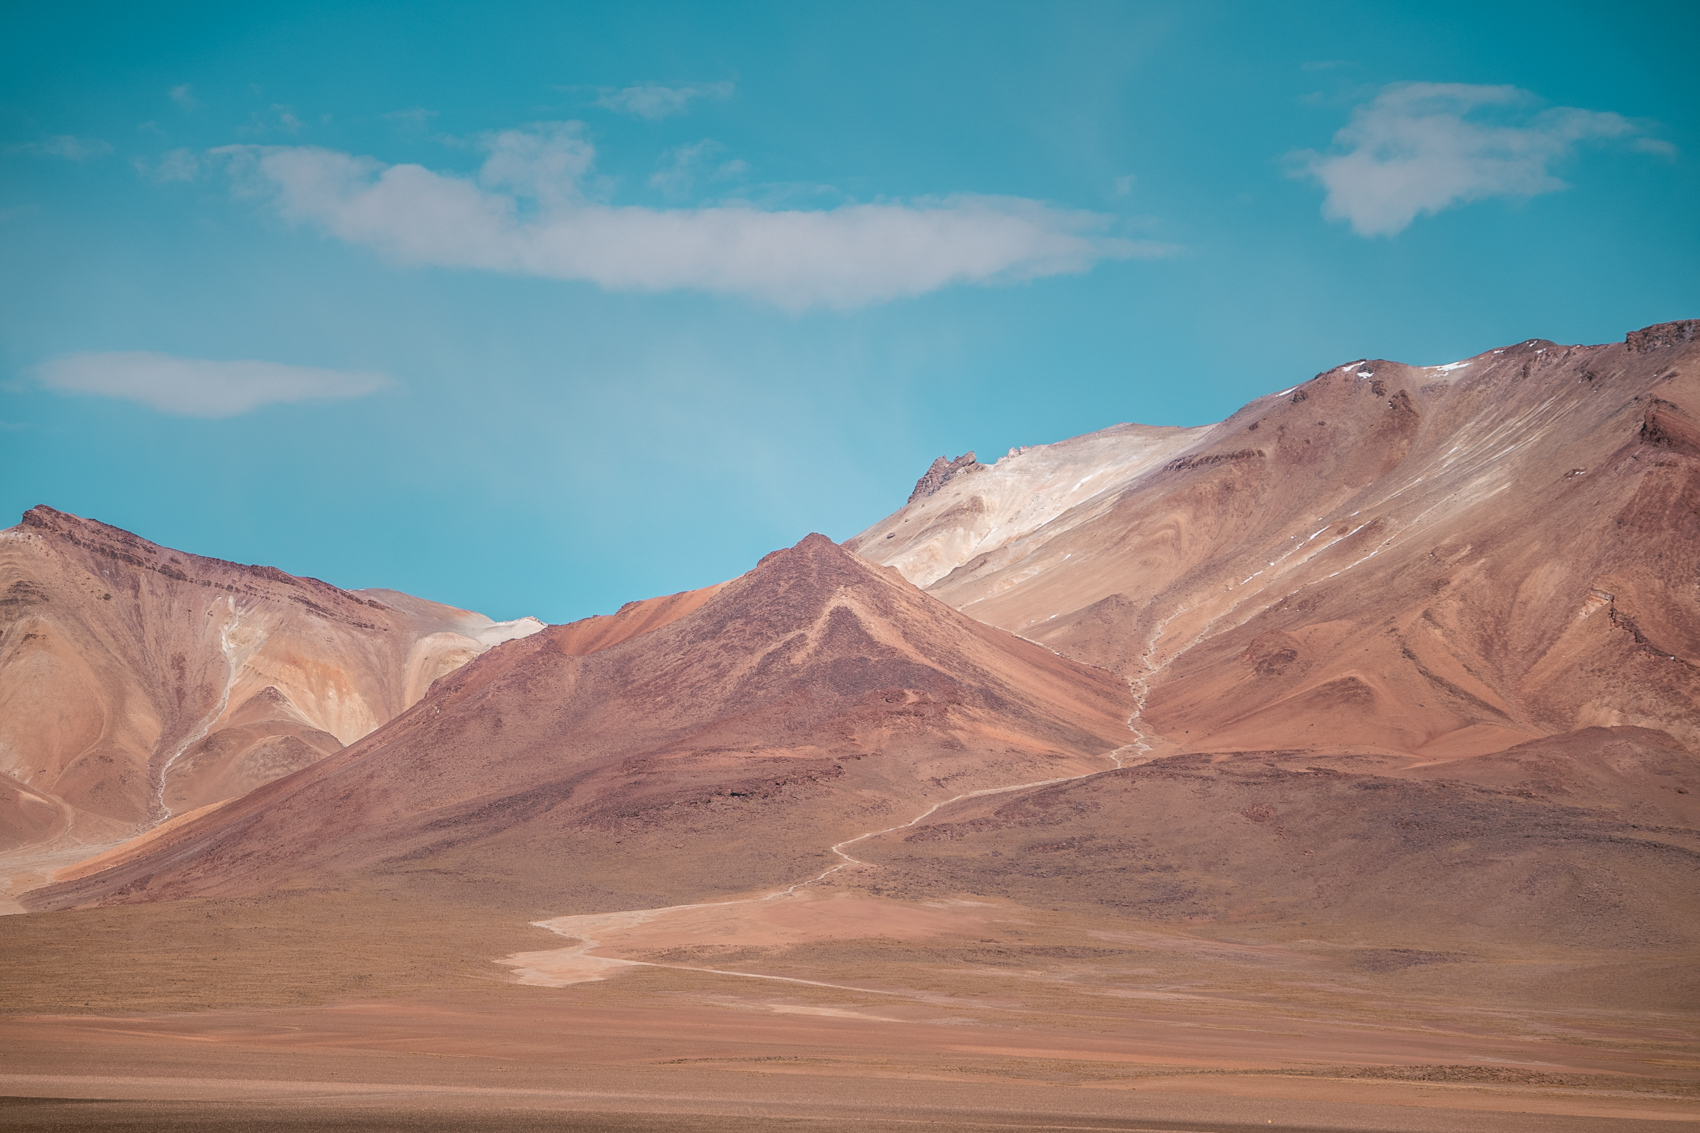 Welke tour kiezen voor Uyuni zoutvlakte, Salar de Uyuni?